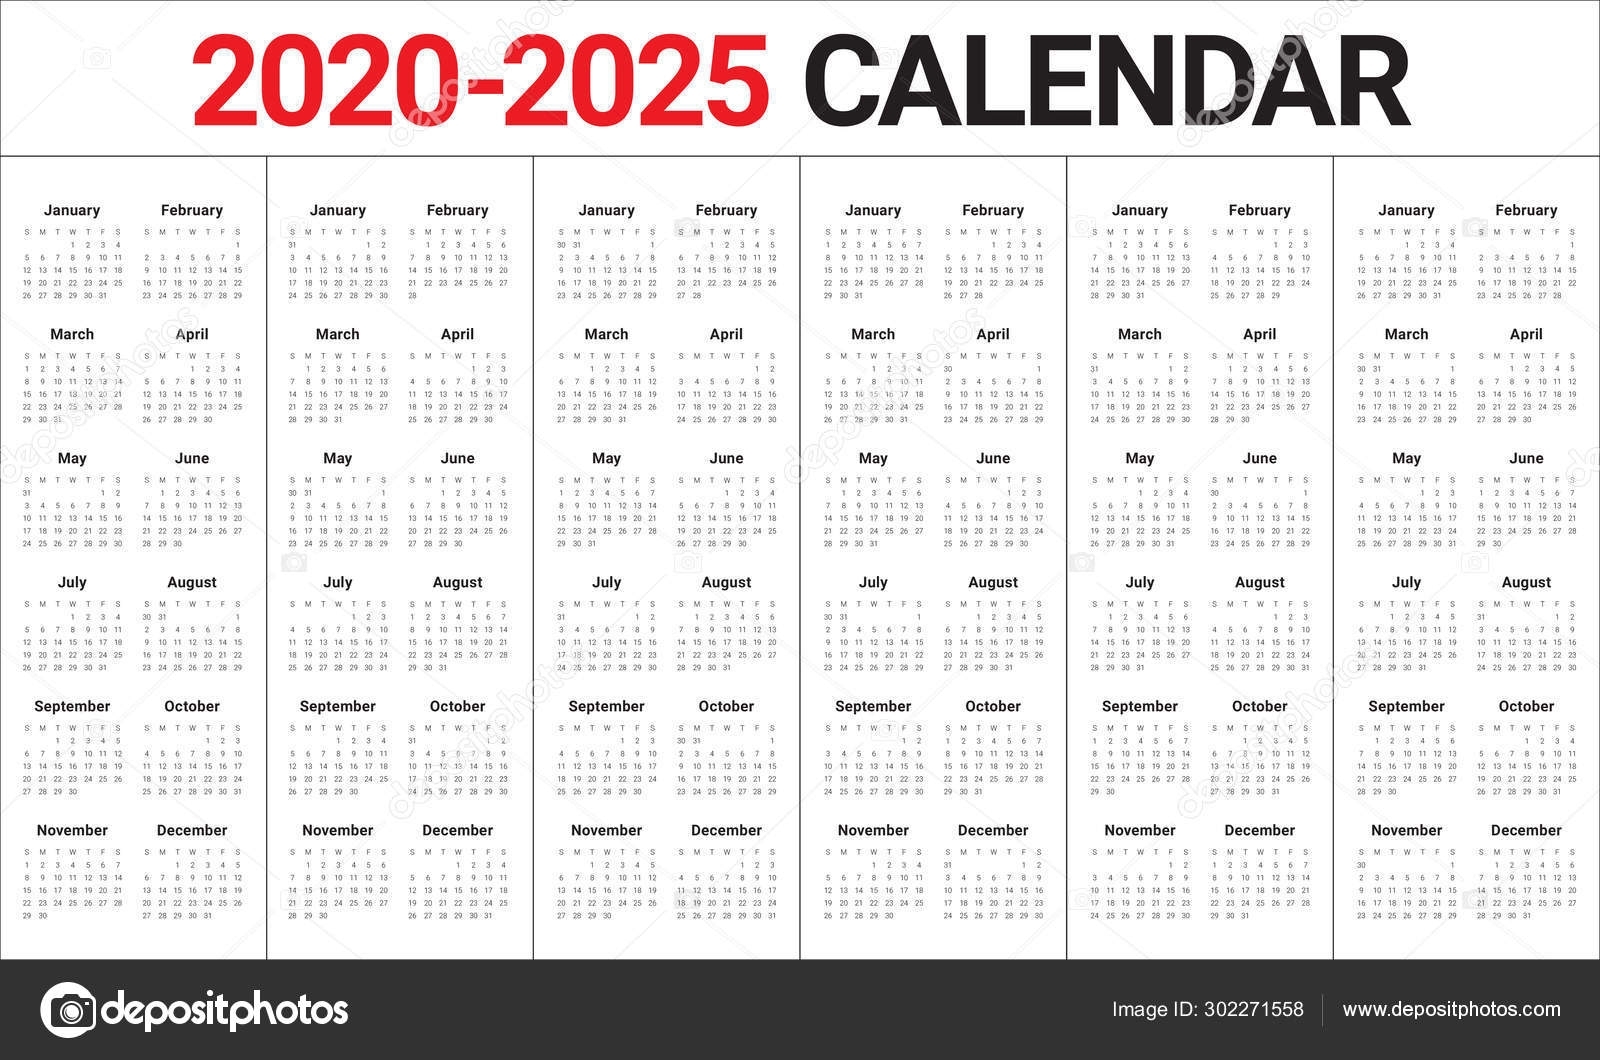 Year 2020 2021 2022 2023 2024 2025 Calendar Vector Design Templa 302271558